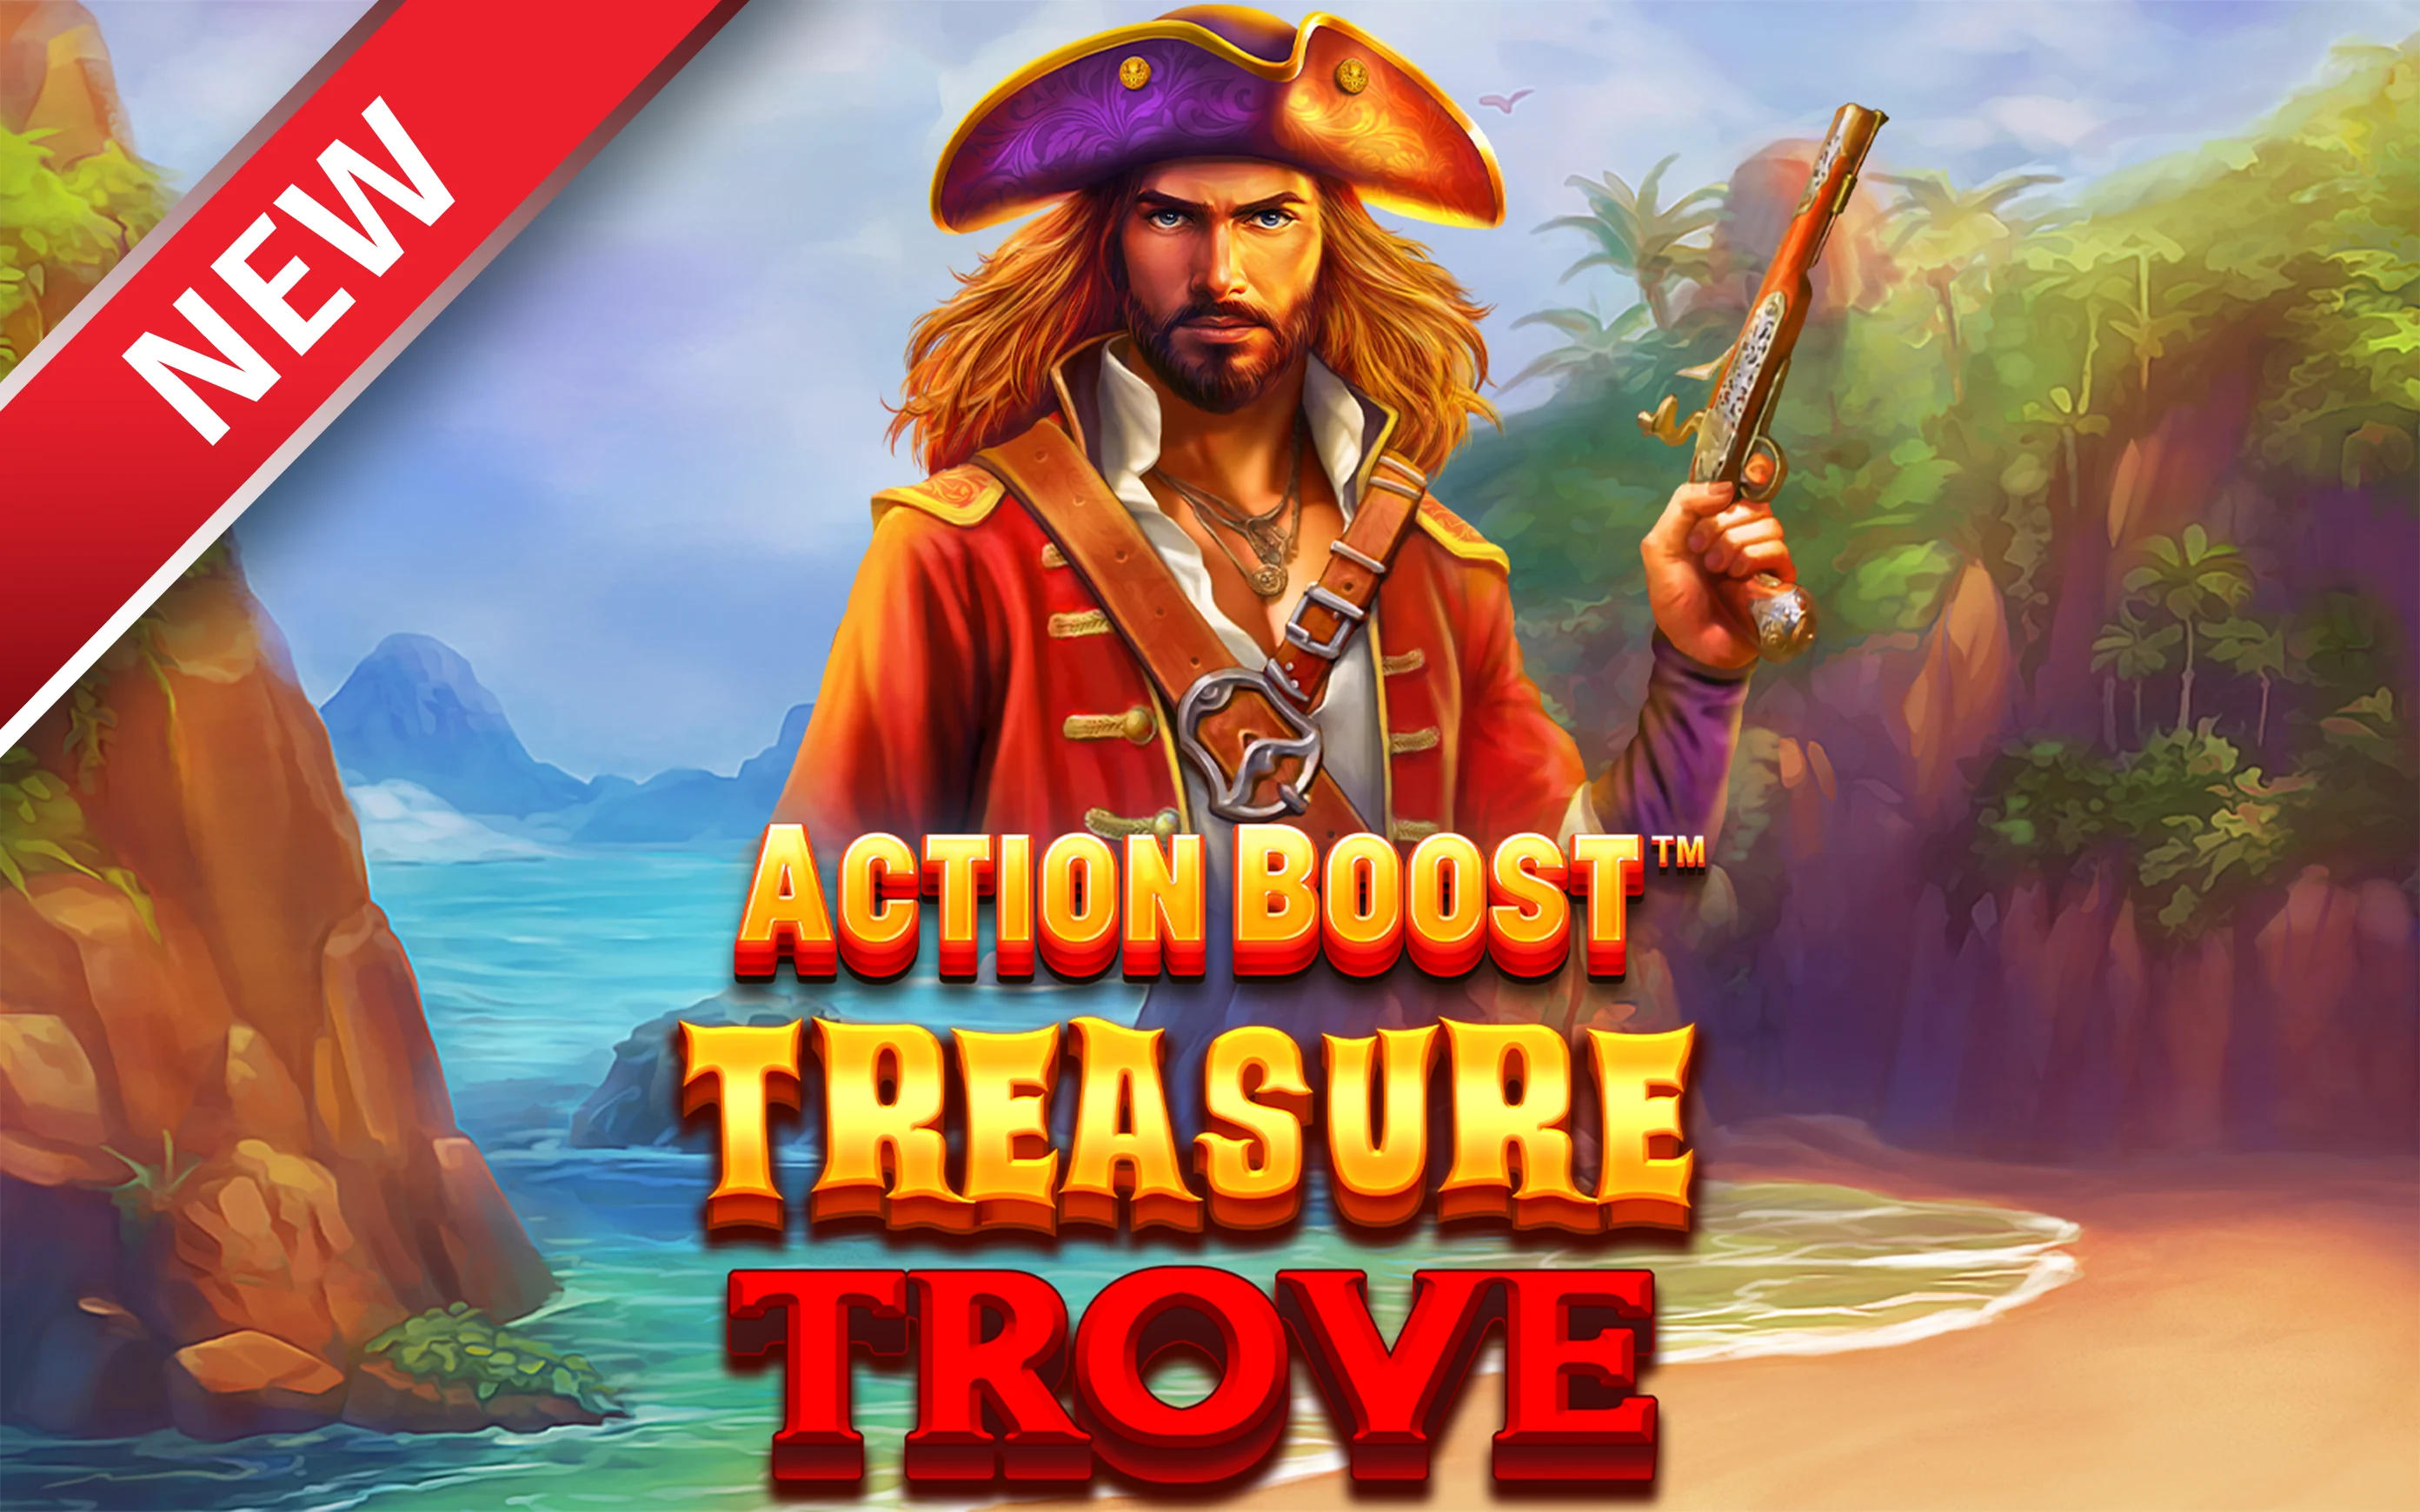 เล่น Action Boost™ Treasure Trove™ บนคาสิโนออนไลน์ Starcasino.be